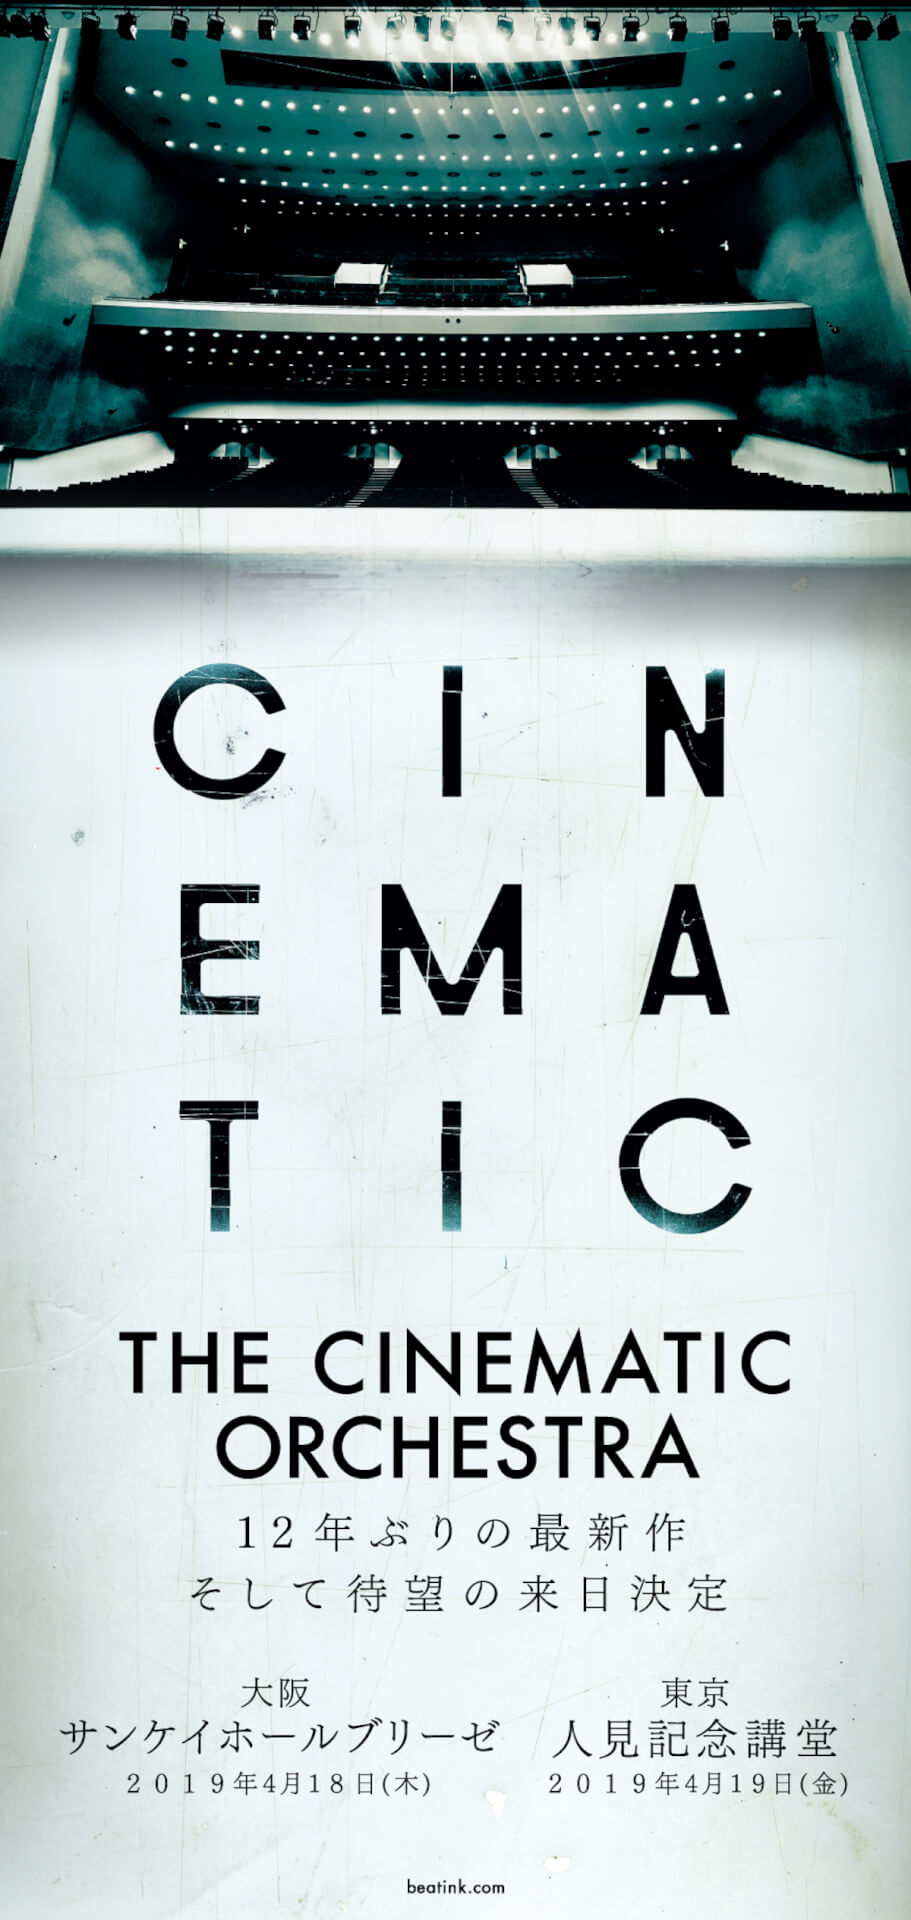 The Cinematic Orchestraが12年振りの最新作を3月にリリース｜4月には来日、初のホールコンサートツアーも発表 music190116-cinematicorchestra-2